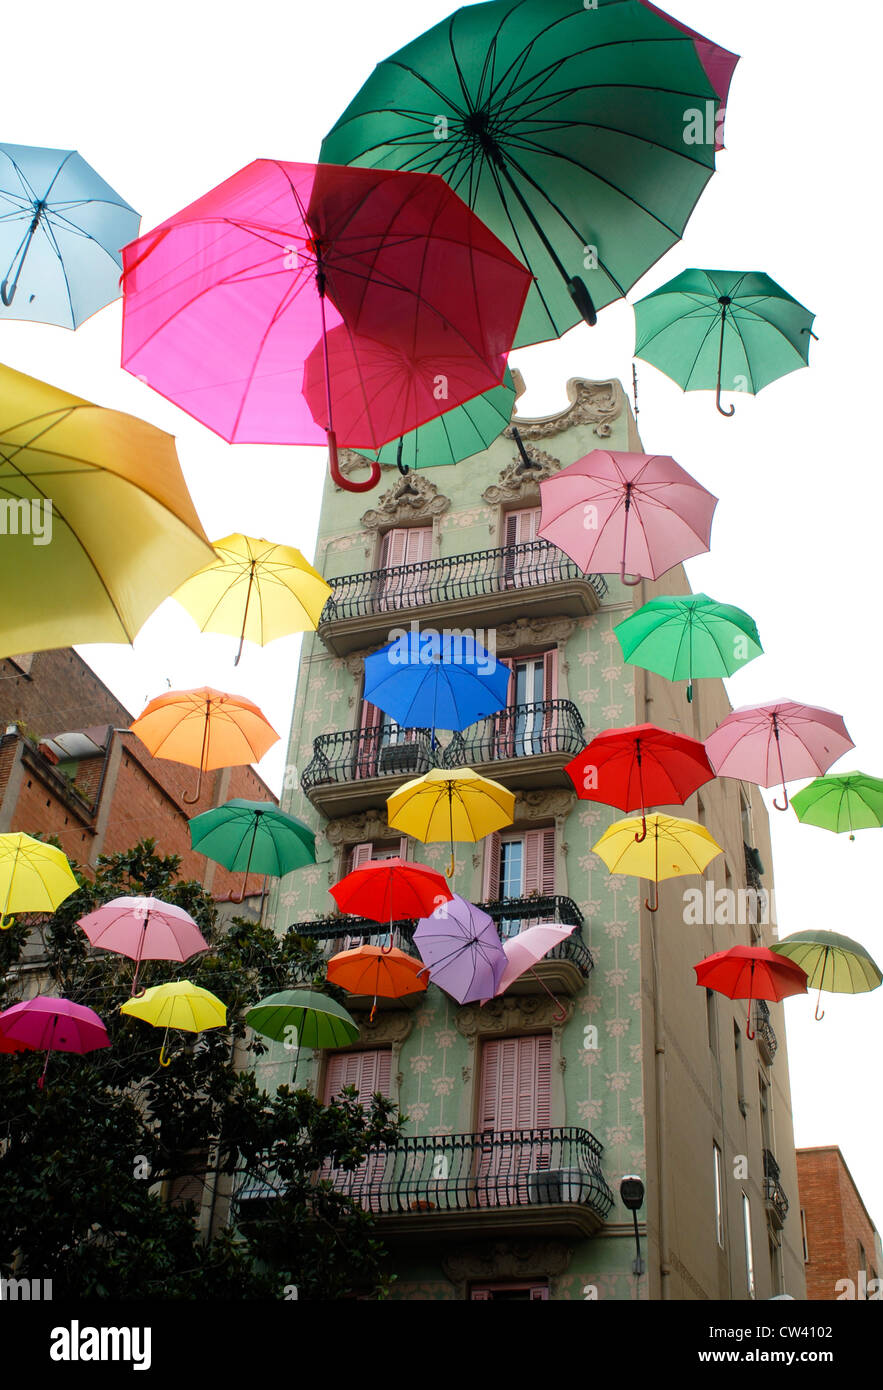 Installation of umbrellas at Plaza del Sol, Gracia, Barcelona, for the Sony Spot Umbrella Stock Photo